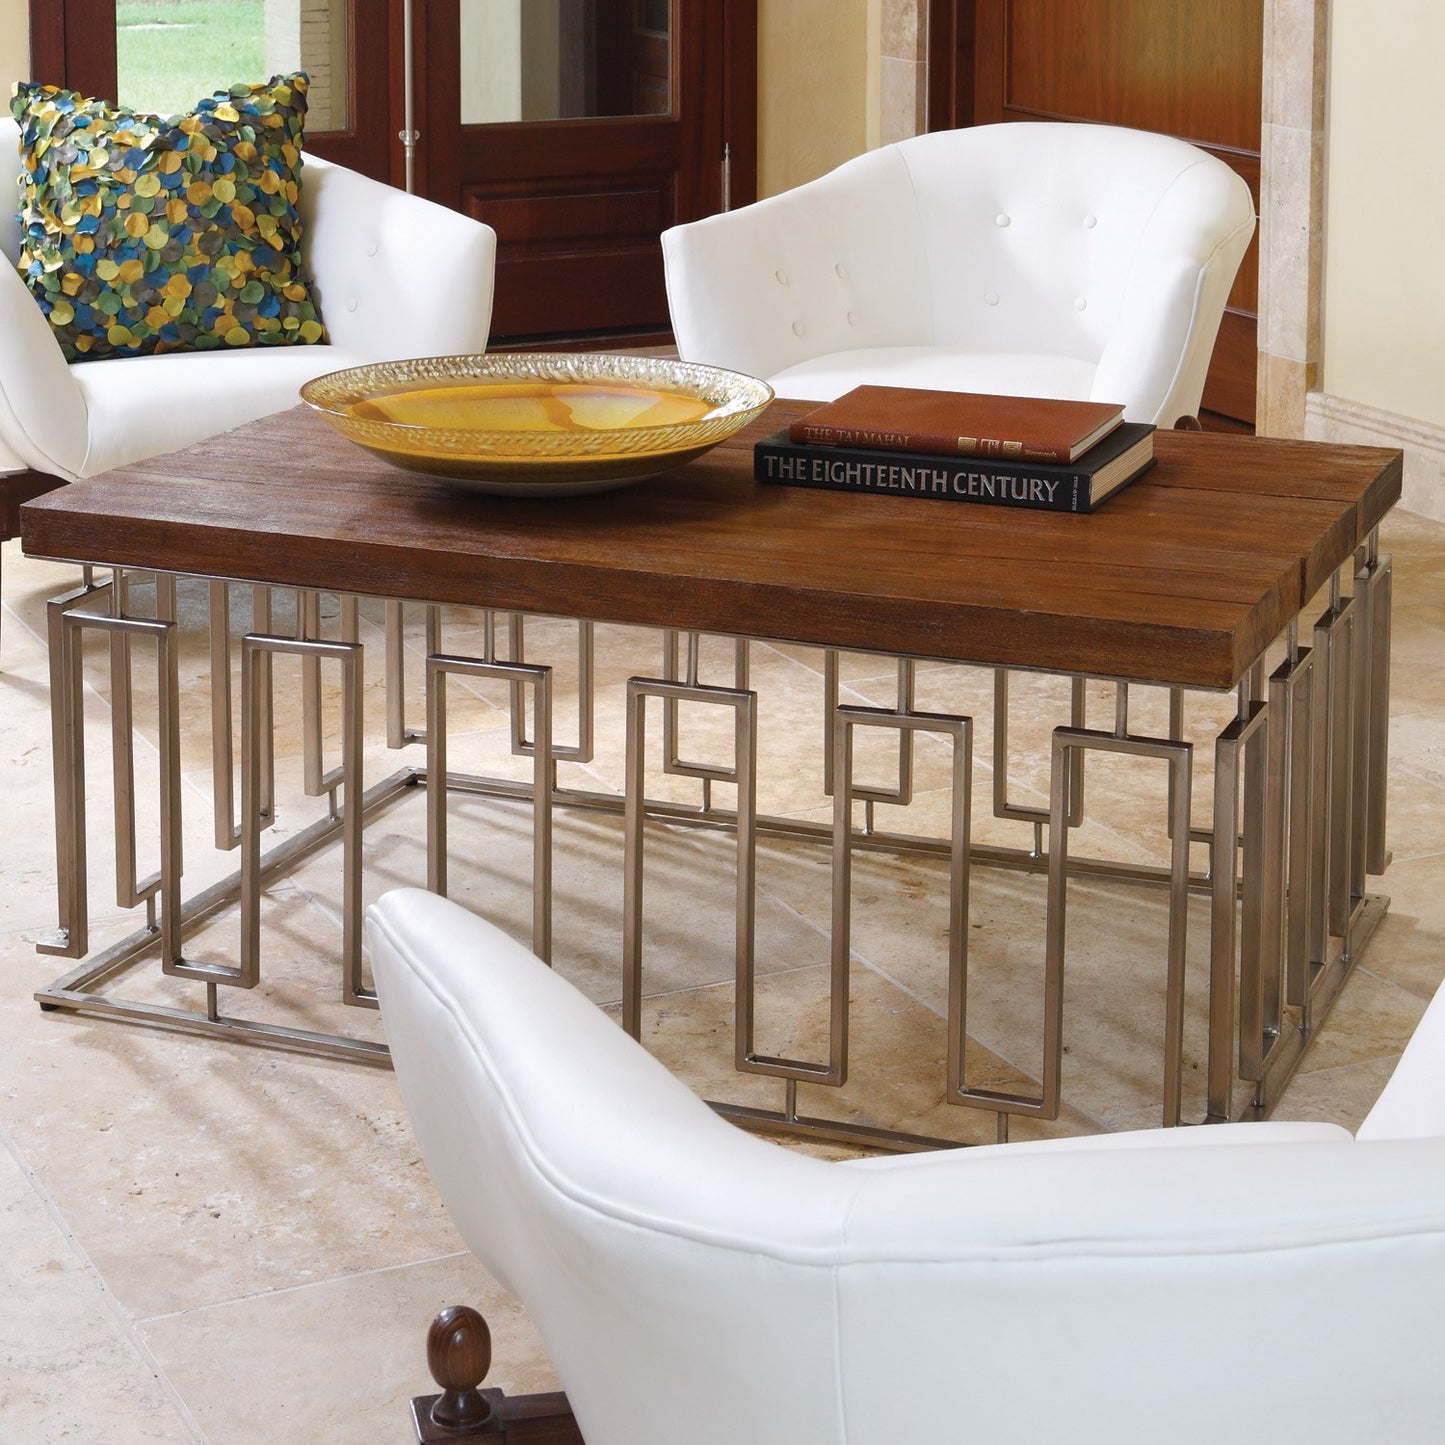 Mimi Leather Chair - White - Grats Decor Interior Design & Build Inc.